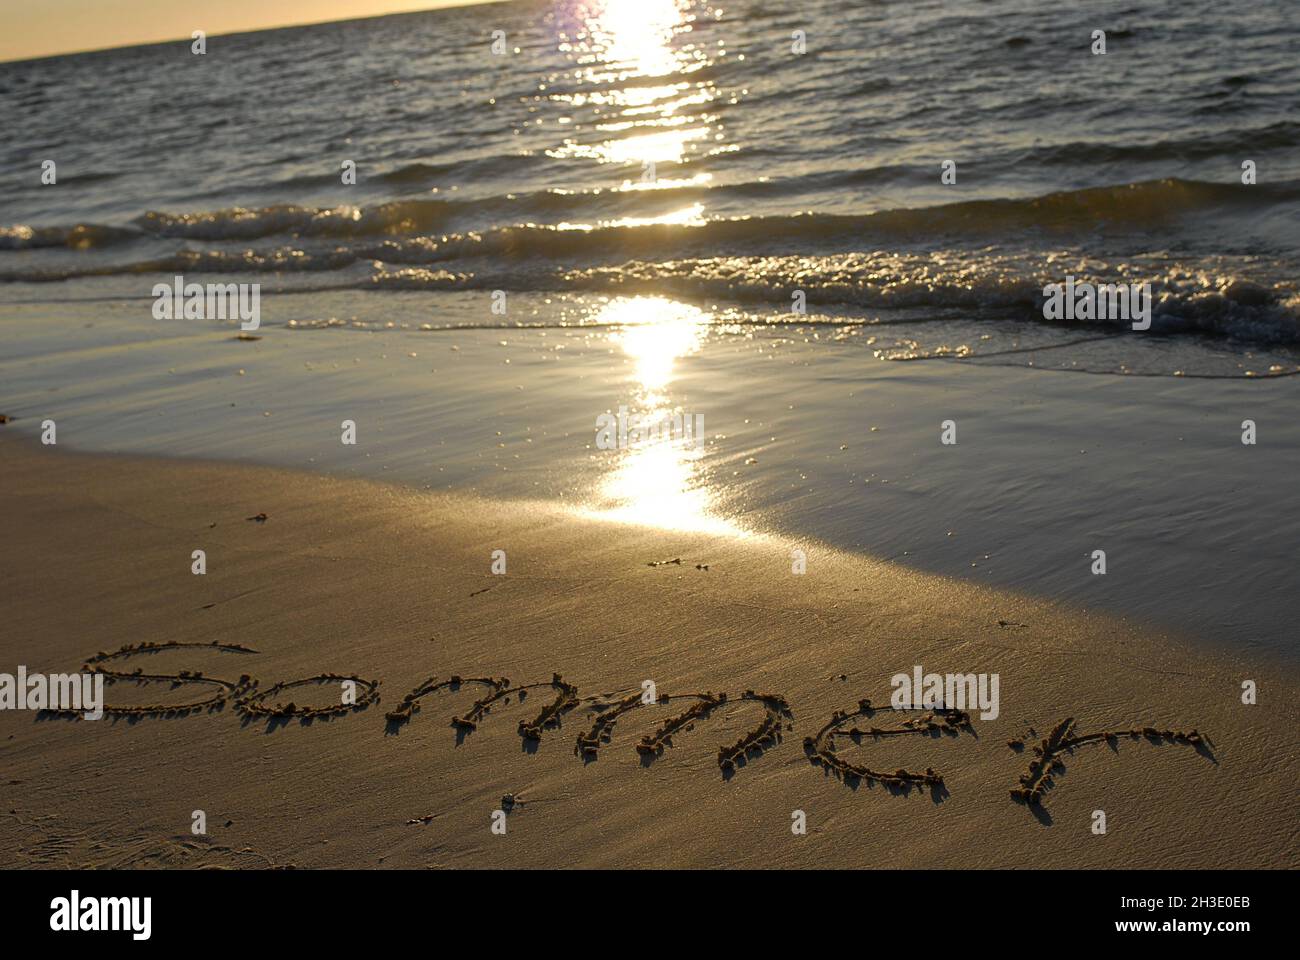 Scrivere 'Sammer' (estate) sulla spiaggia, Australia Foto Stock